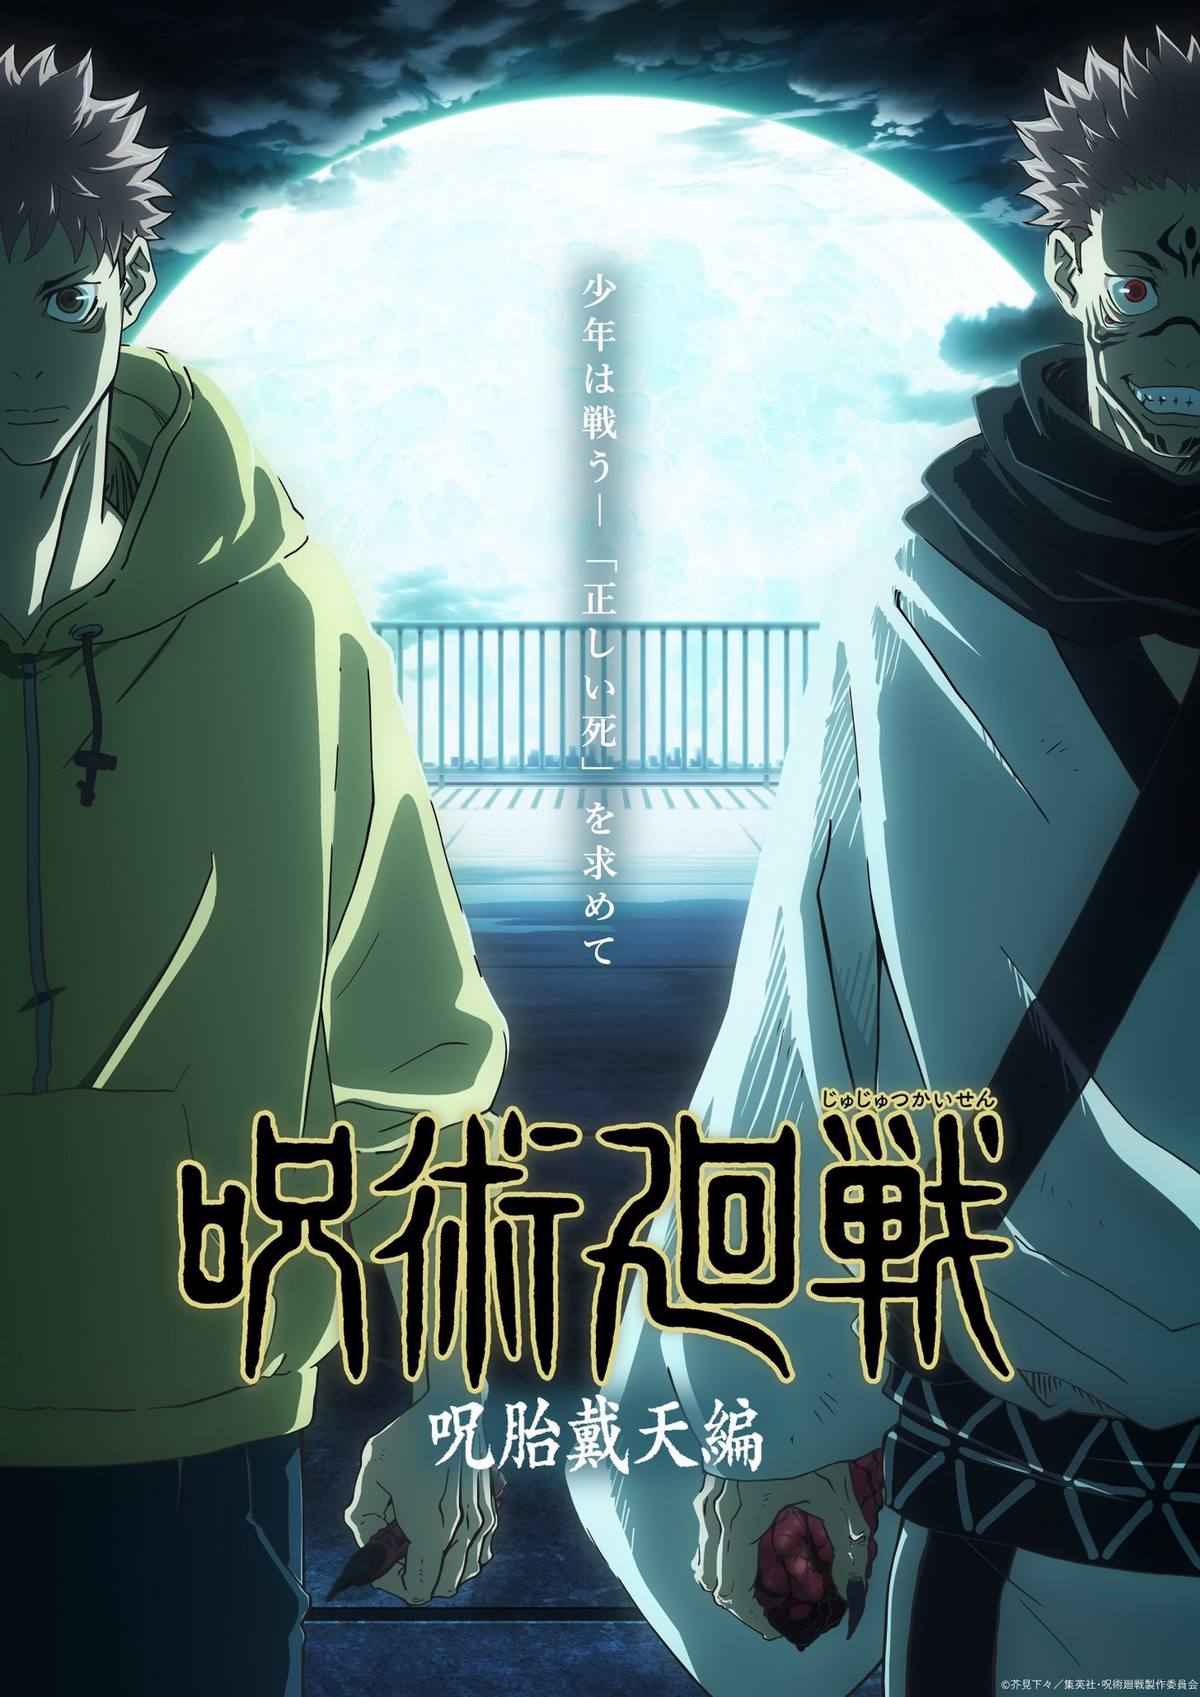 Toji Fights Dagon in Jujutsu Kaisen Season 2 Episode 15 Preview, Sukuna  Awakens - Anime Corner